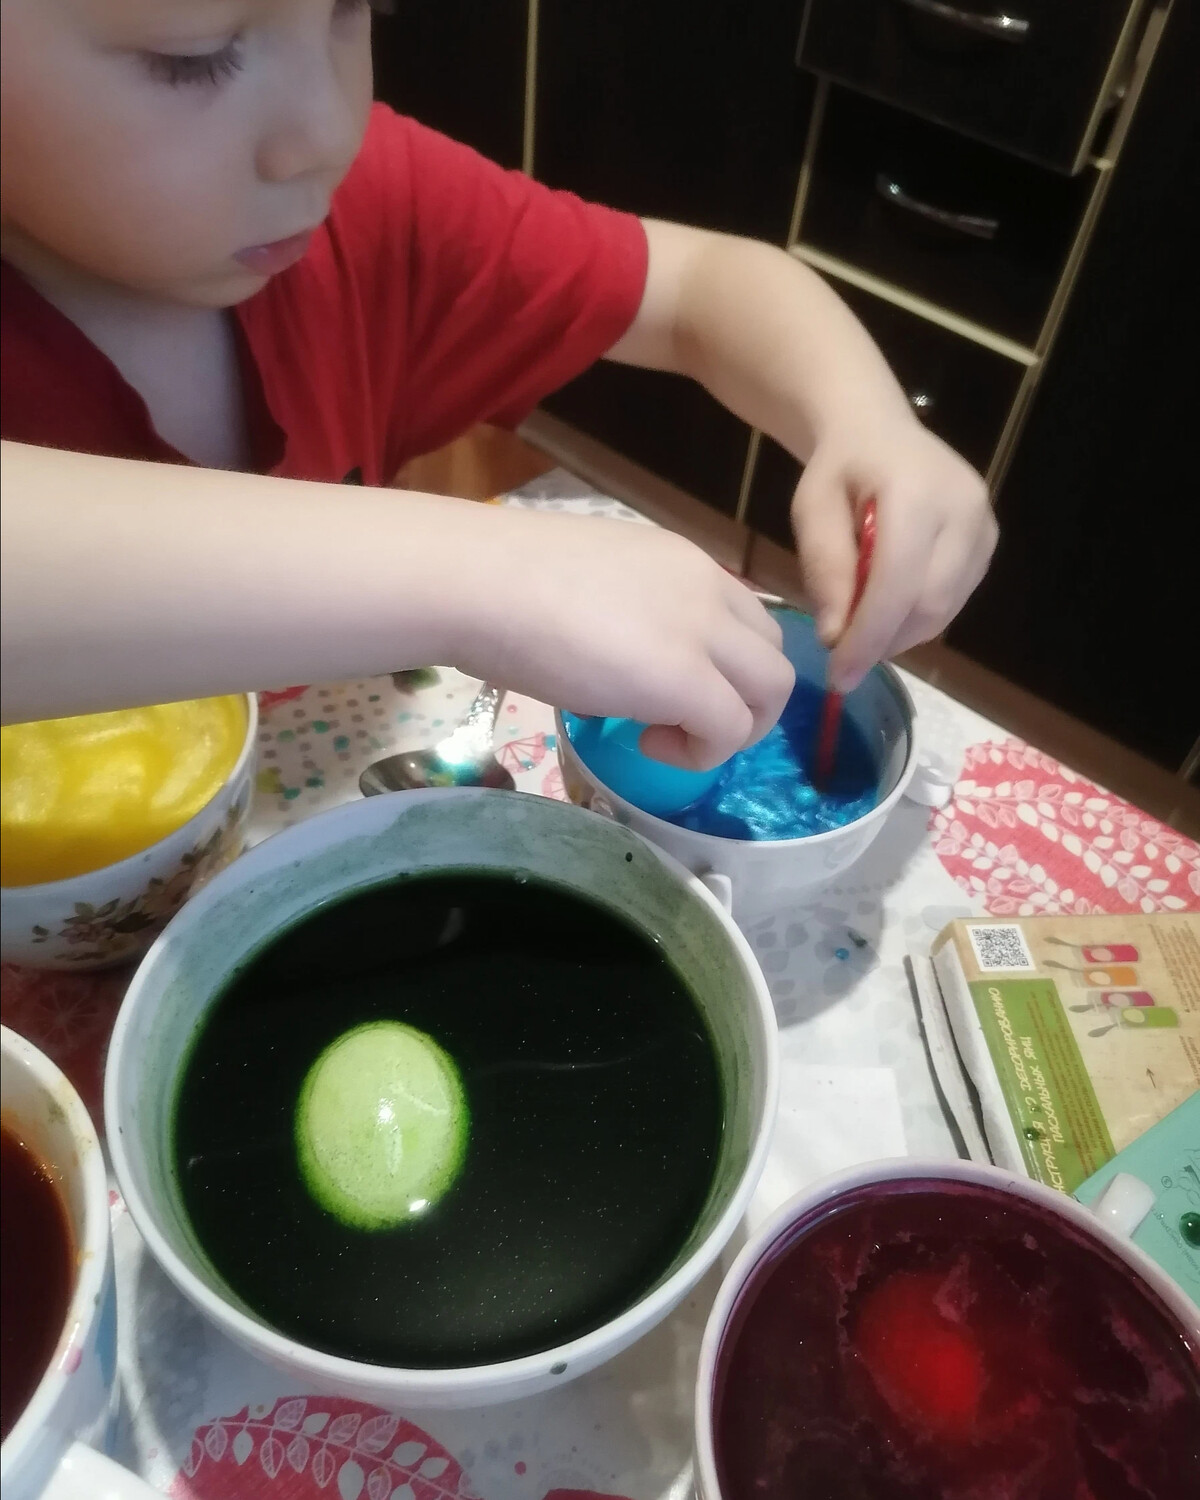 Яичный краситель. Красители для яиц. Покраска яиц необычным способом обычным чаем. Крашение яиц с содой. Как покрасить яйца без красителей